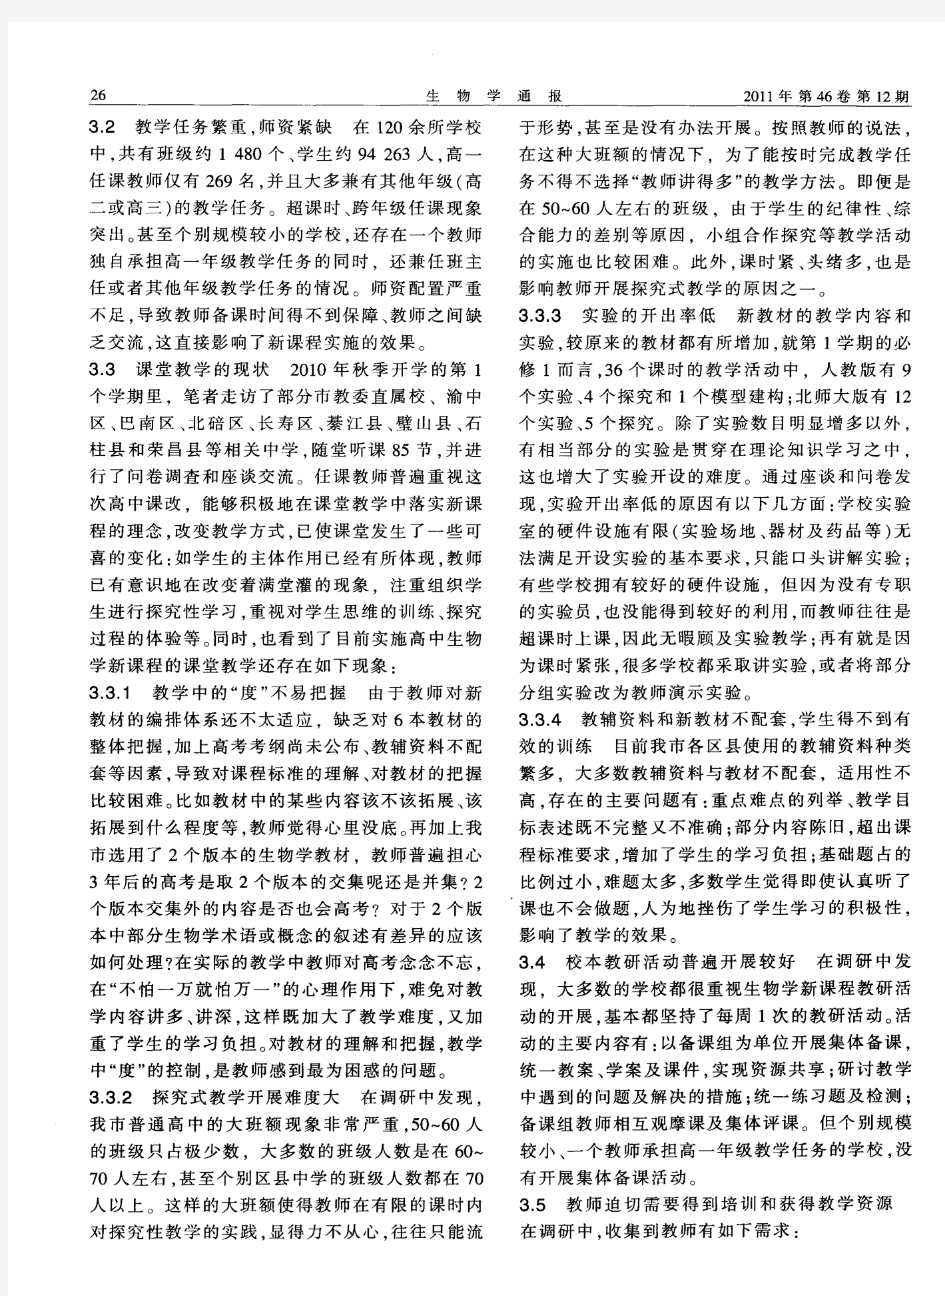 重庆市普通高中新课程实验初期生物学科调研报告